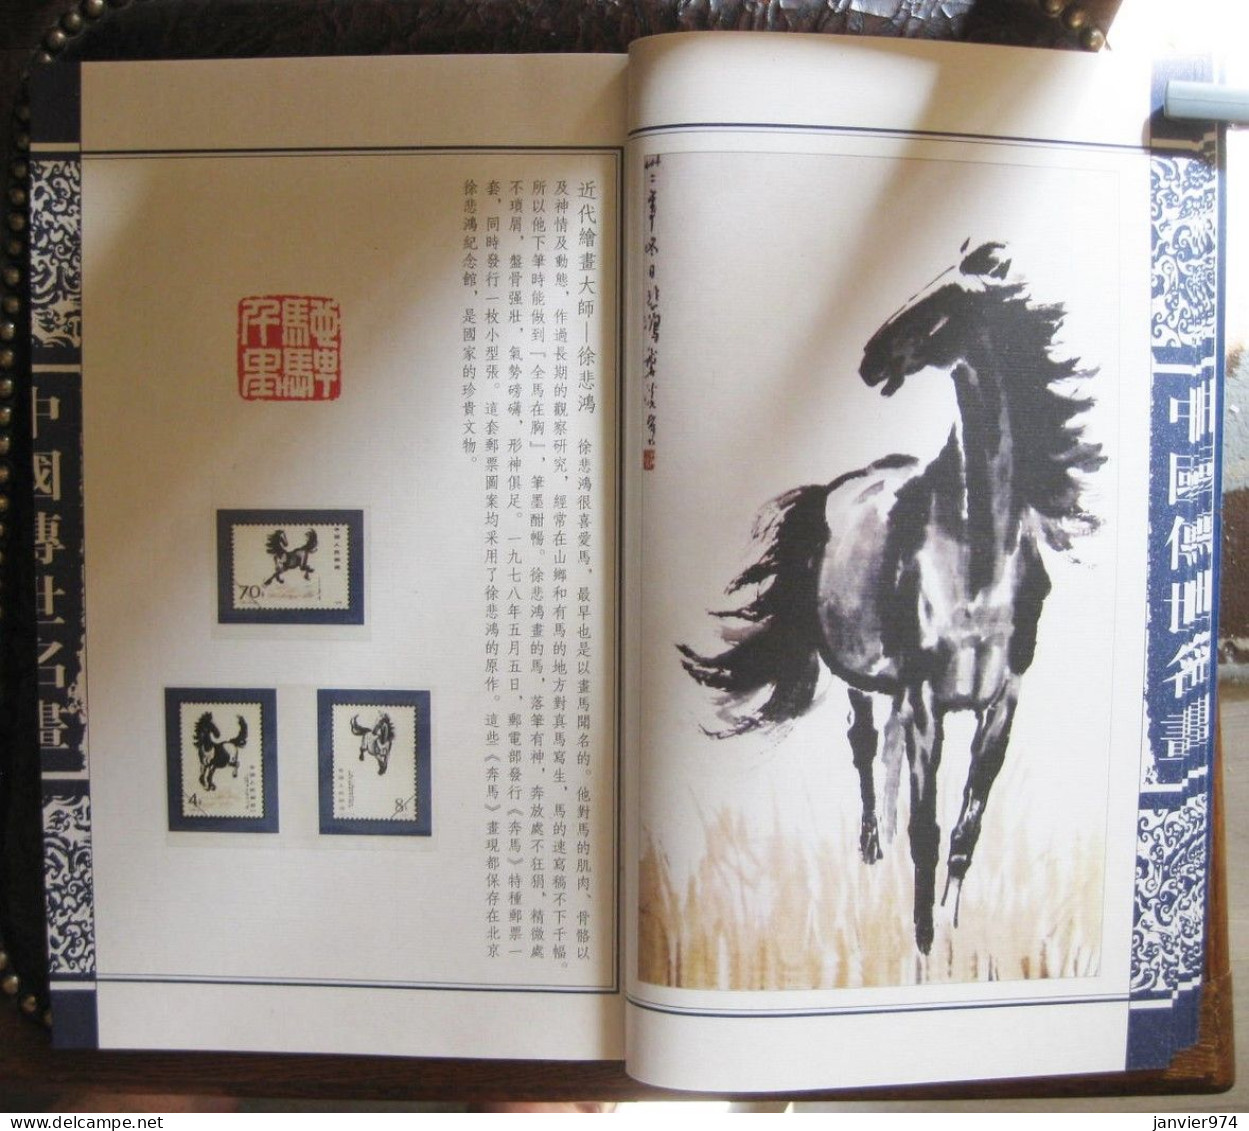 Coffret et livre de lithographies ou dessins de 7 grands peintres chinois pour 35 timbres chinois Tres rare